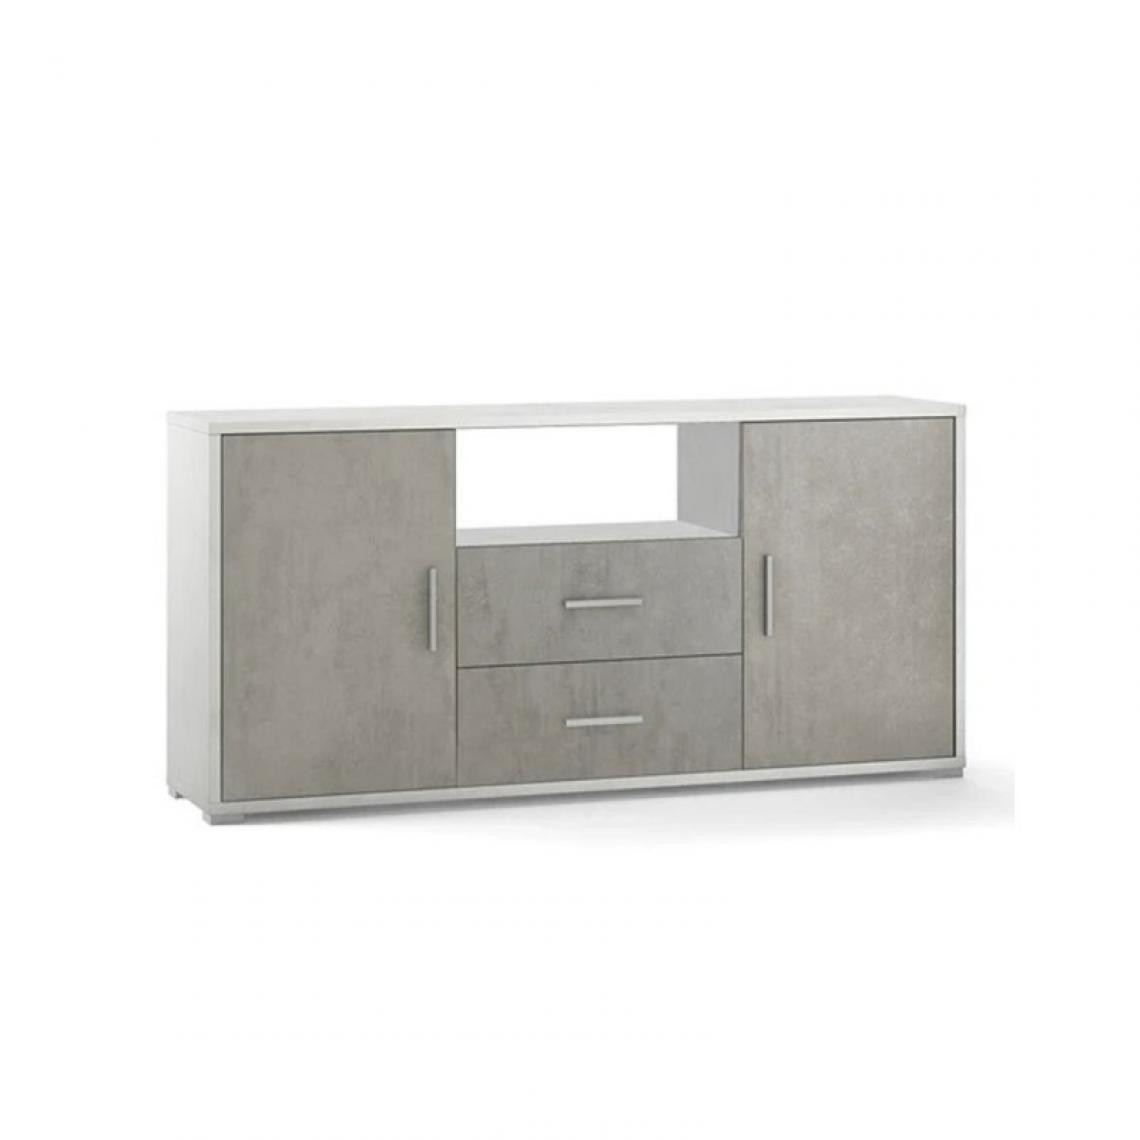 Webmarketpoint - Buffet avec deux portes et deux tiroirs Ciment Blanc 174x41x h84 cm - Buffets, chiffonniers